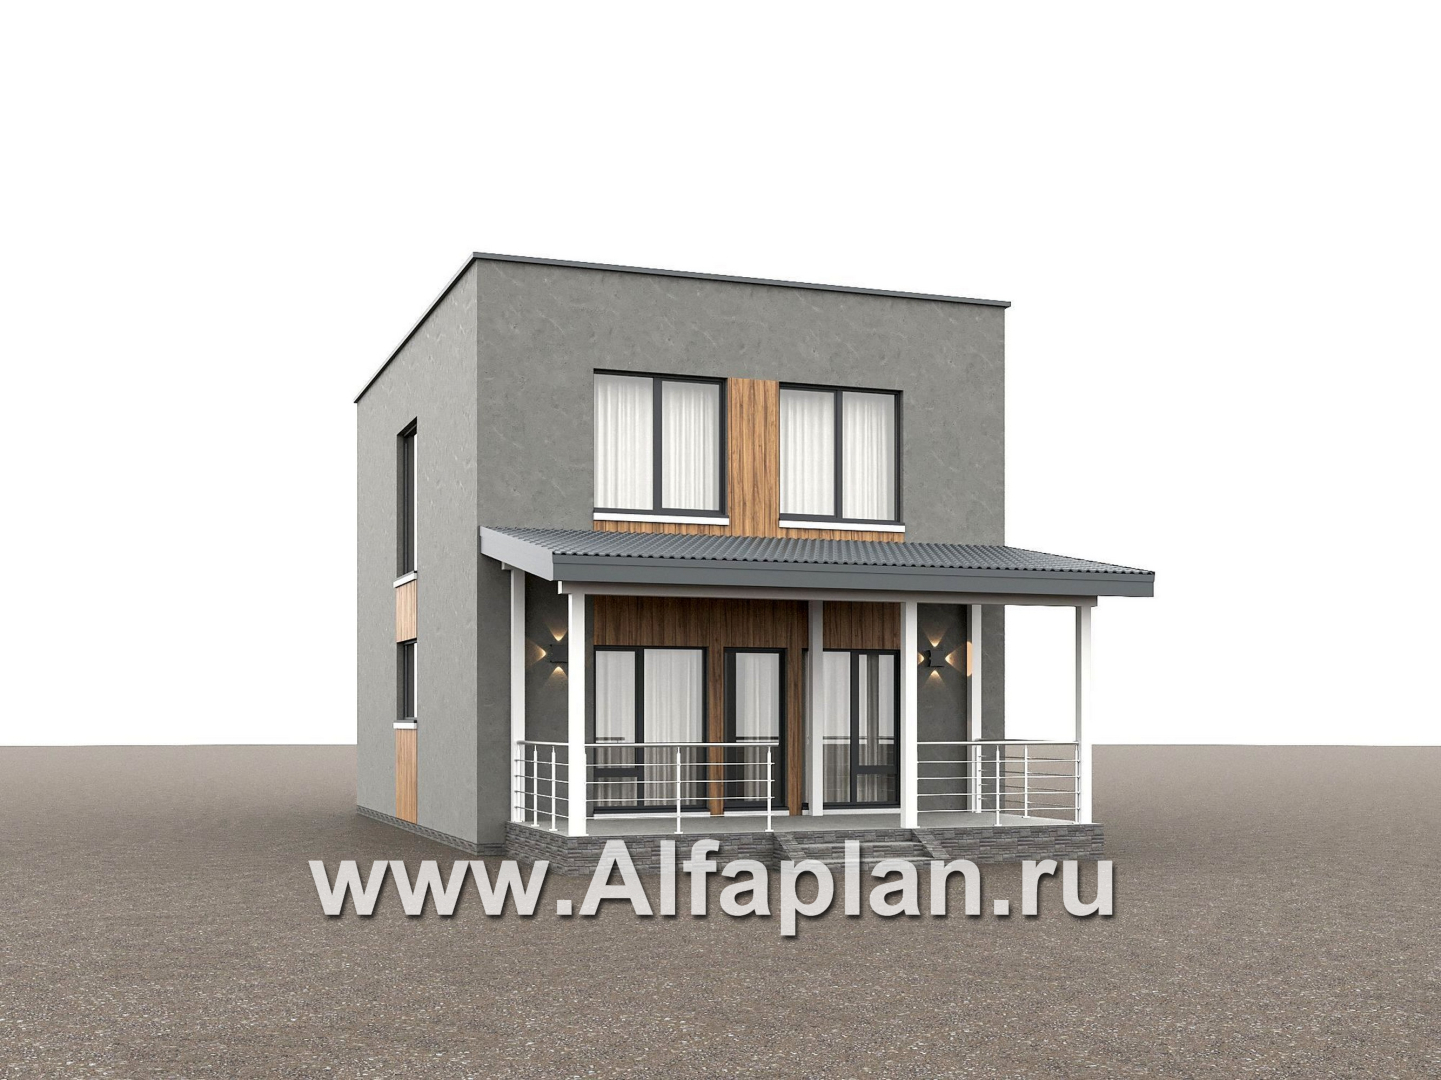 Проекты домов Альфаплан - "Викинг" - проект дома, 2 этажа, с сауной и с террасой, в стиле хай-тек - дополнительное изображение №2